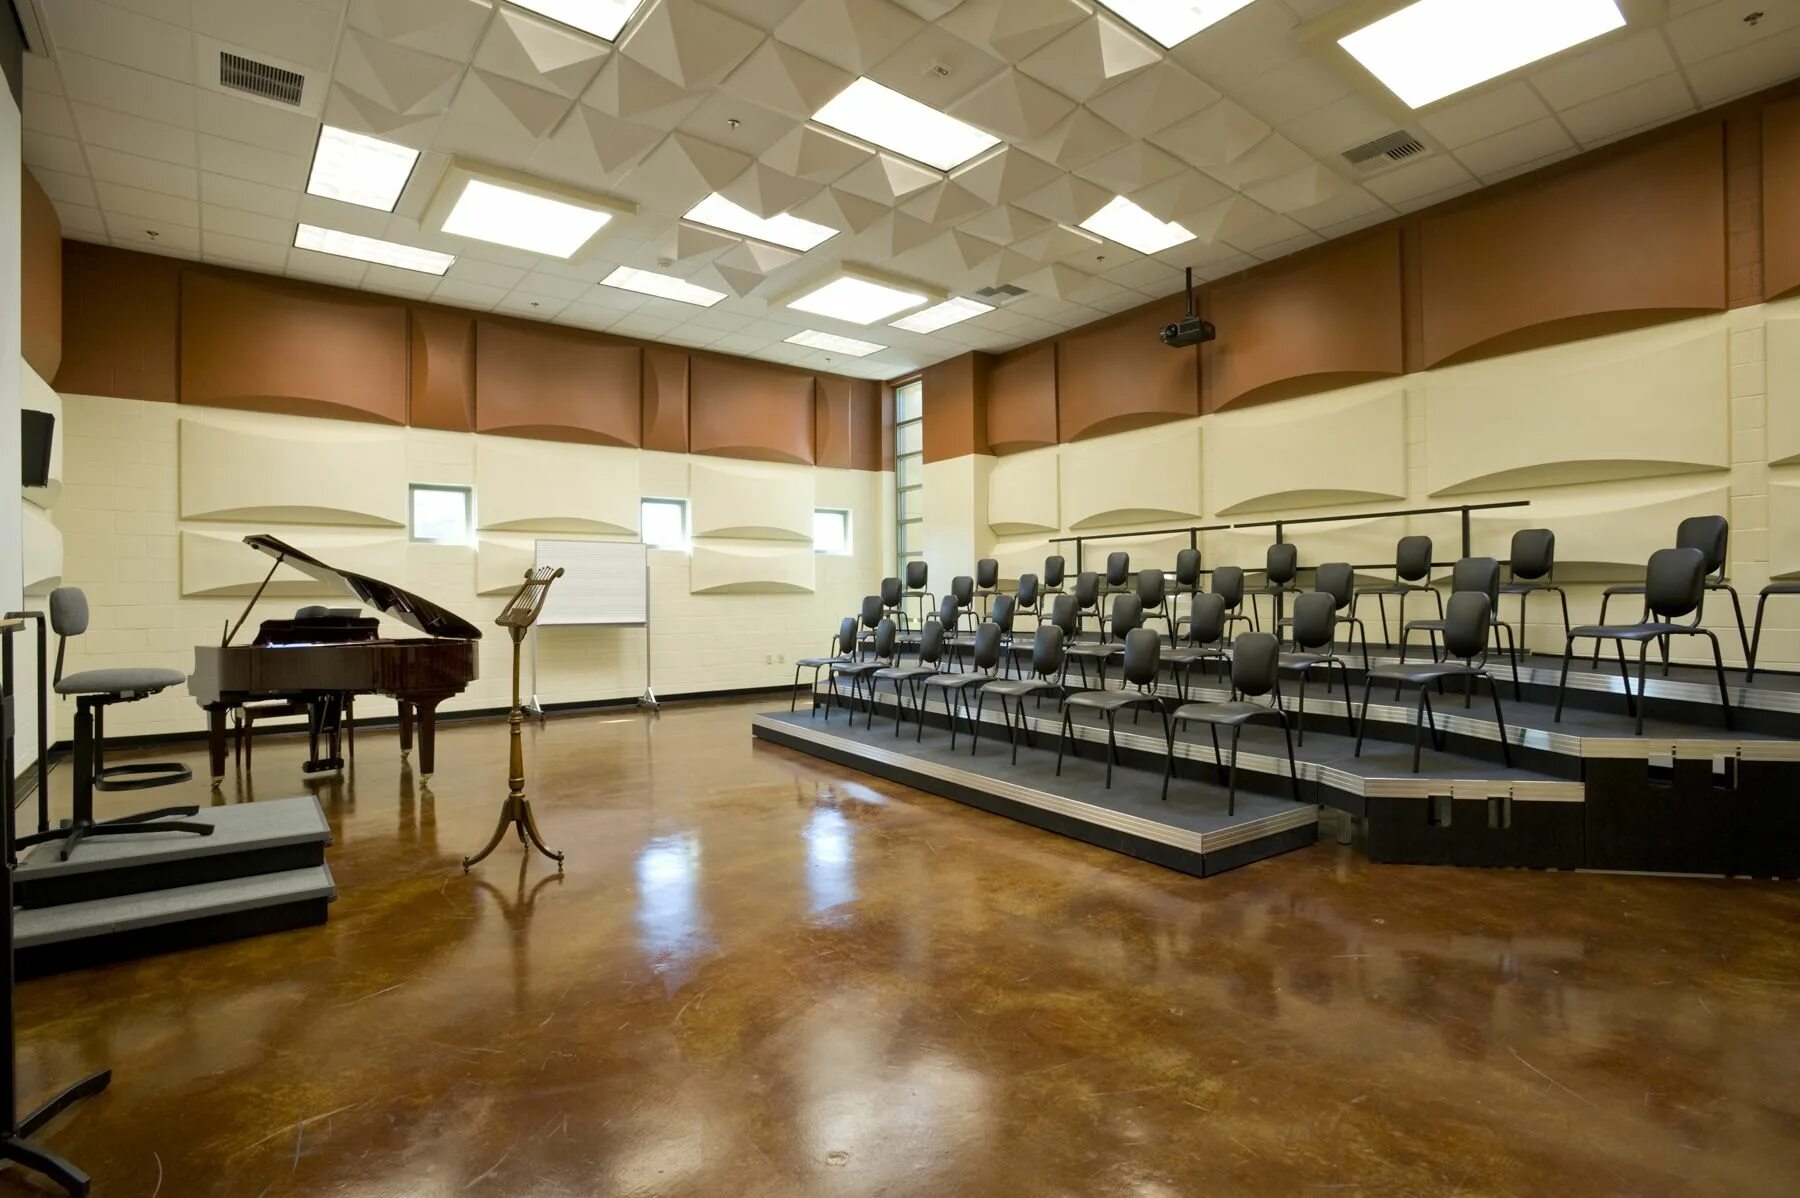 Интерьер музыкальной школы. Музыкальный зал в школе. Репетиционный зал. Хор зал. Кабинет музыки в школе